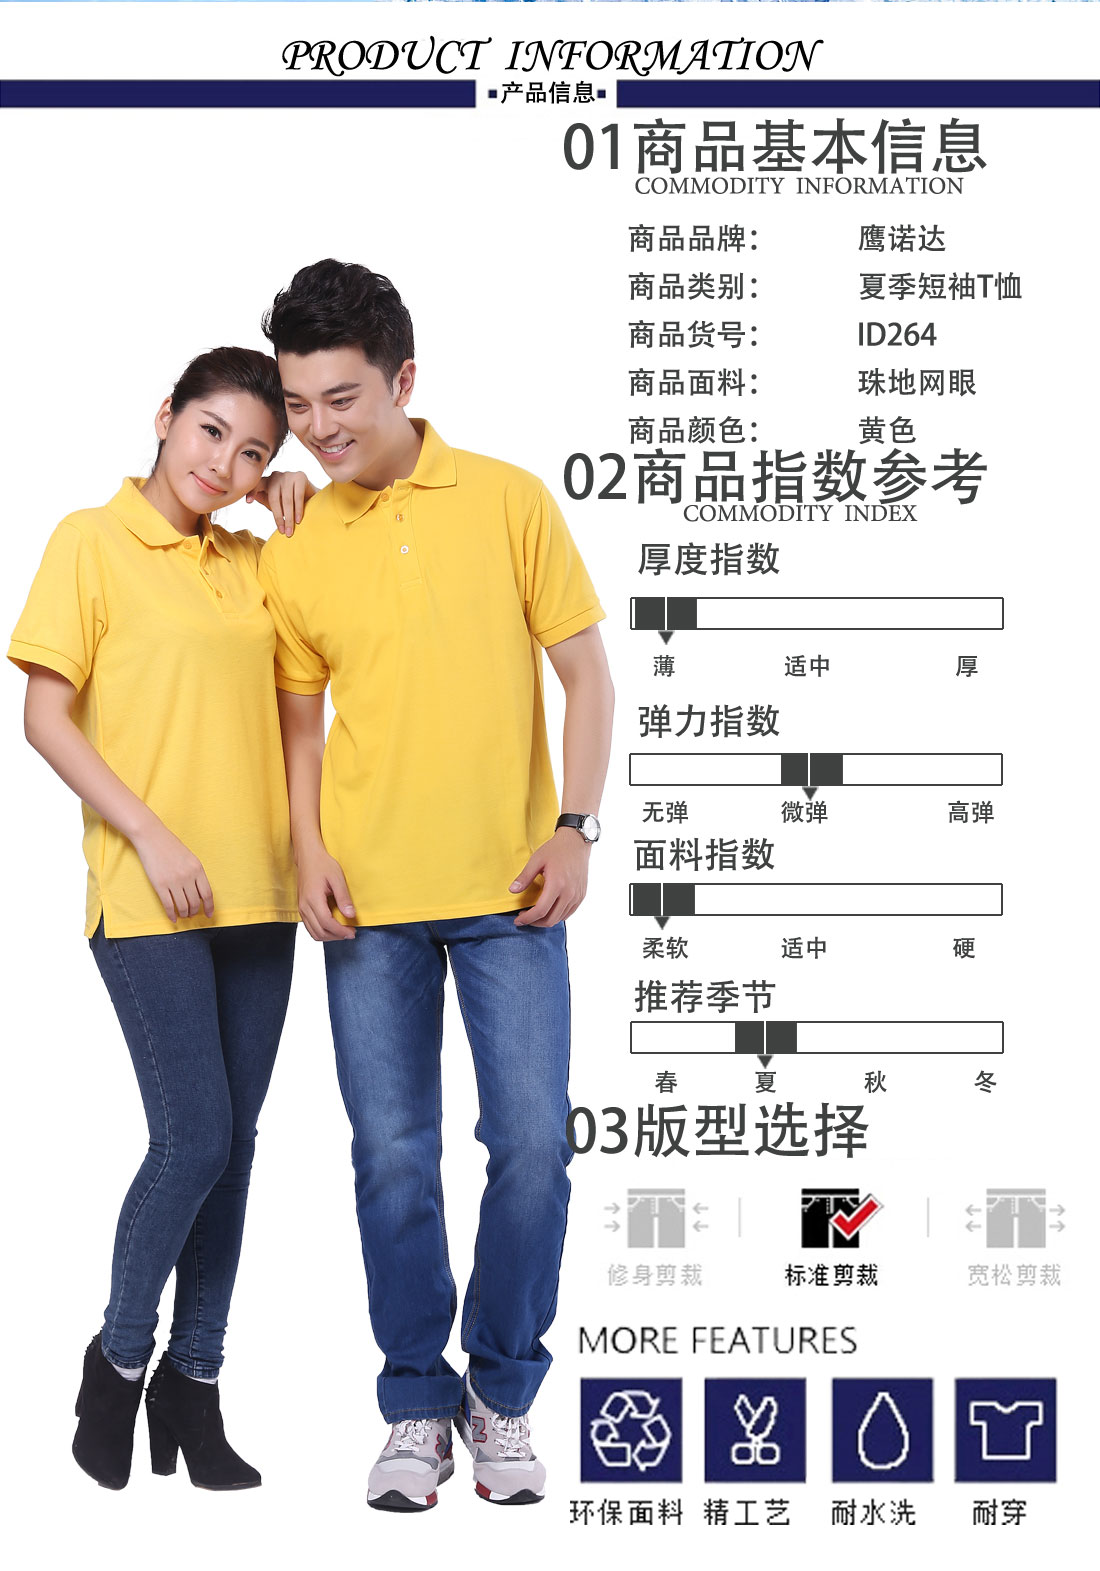 夏日新品短袖T恤工作服 黄色丝光棉修身t恤衫工作服商品基本信息、指数参考、版型选择 